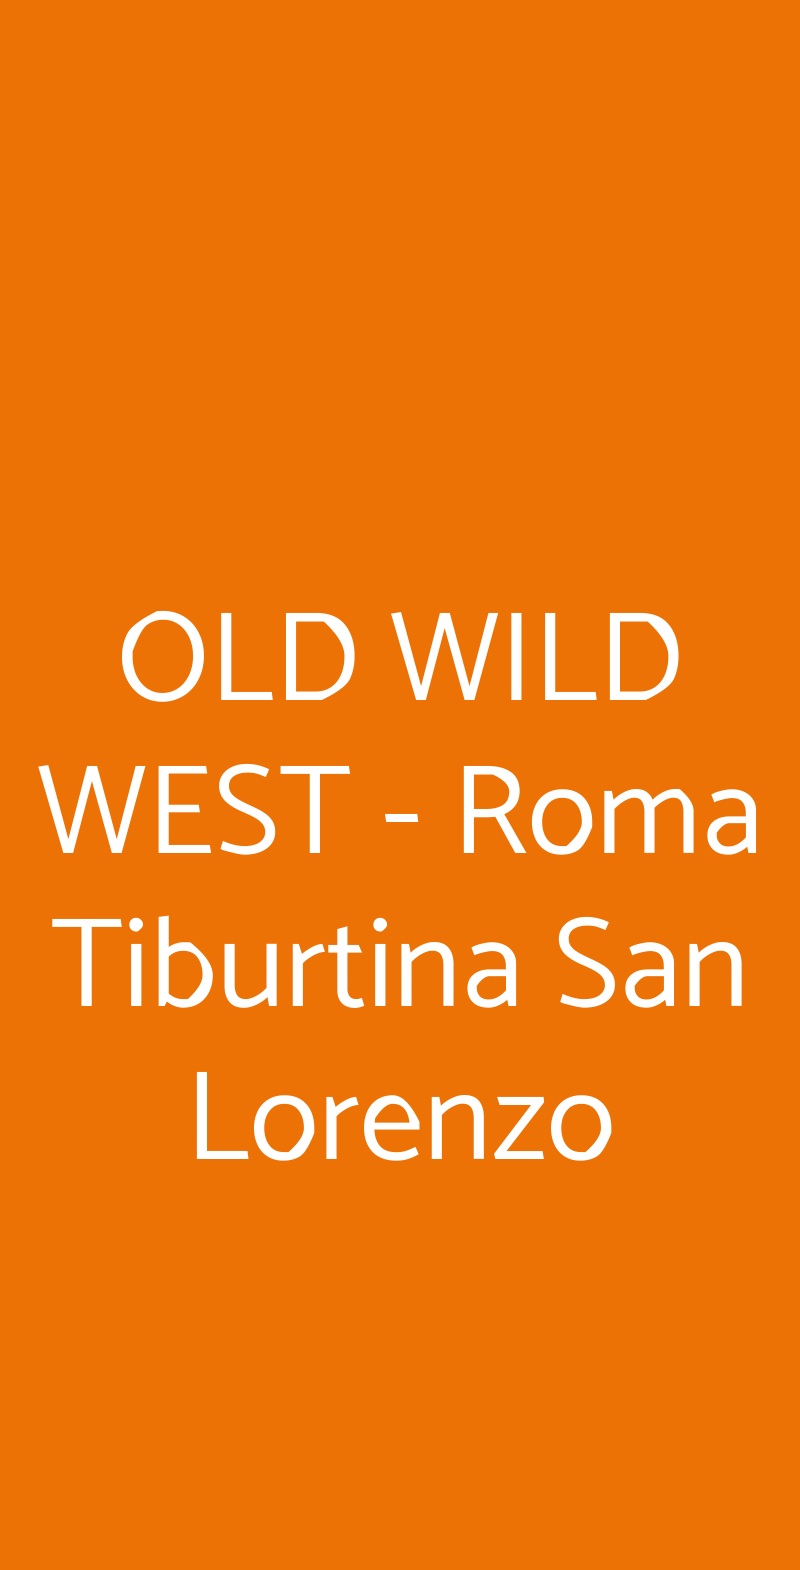 OLD WILD WEST - Roma Tiburtina San Lorenzo Roma menù 1 pagina